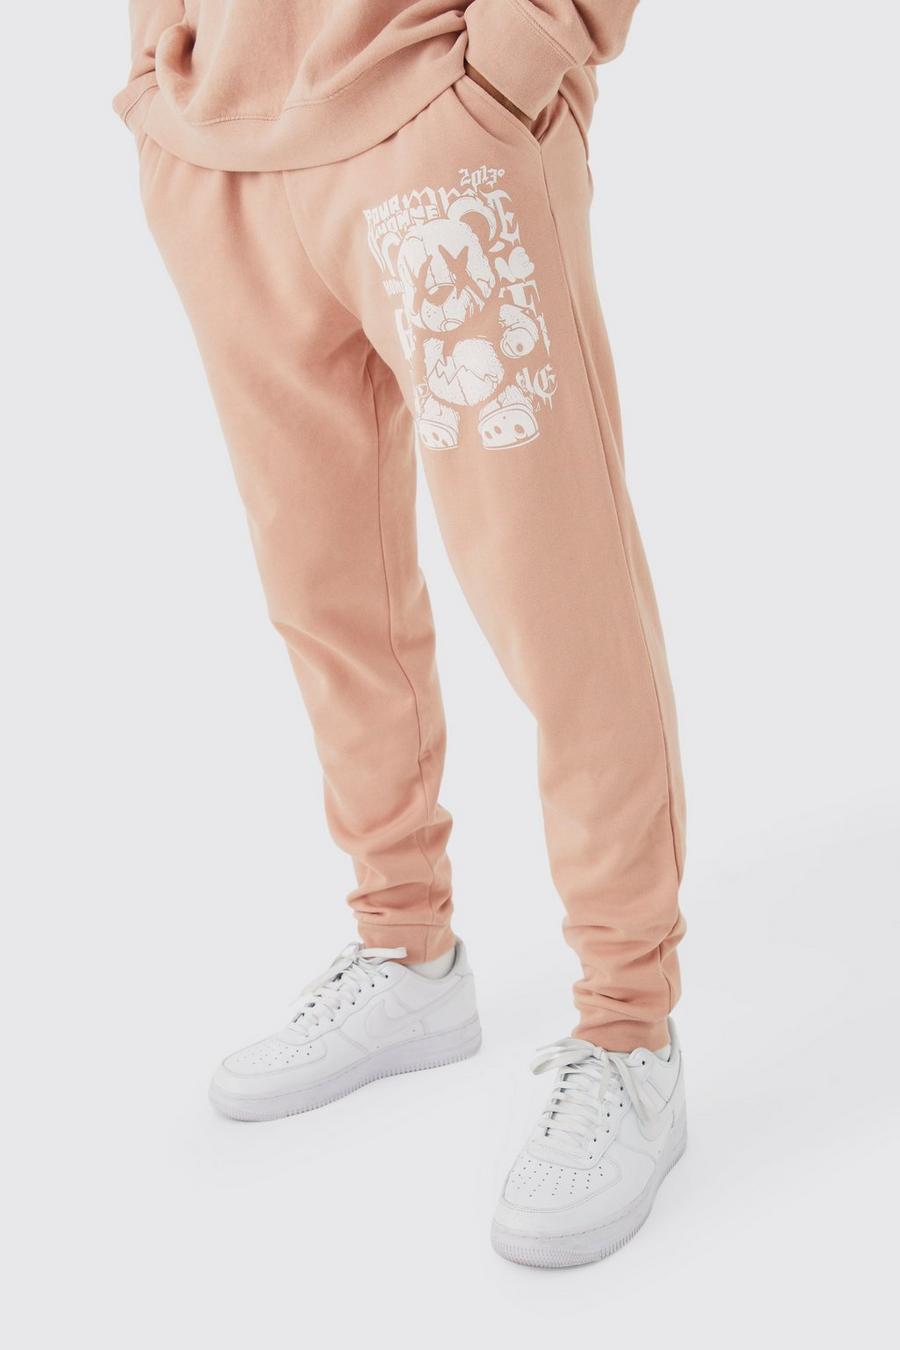 Pantalón deportivo oversize de borreguito sintético con grafiti, Dusty pink